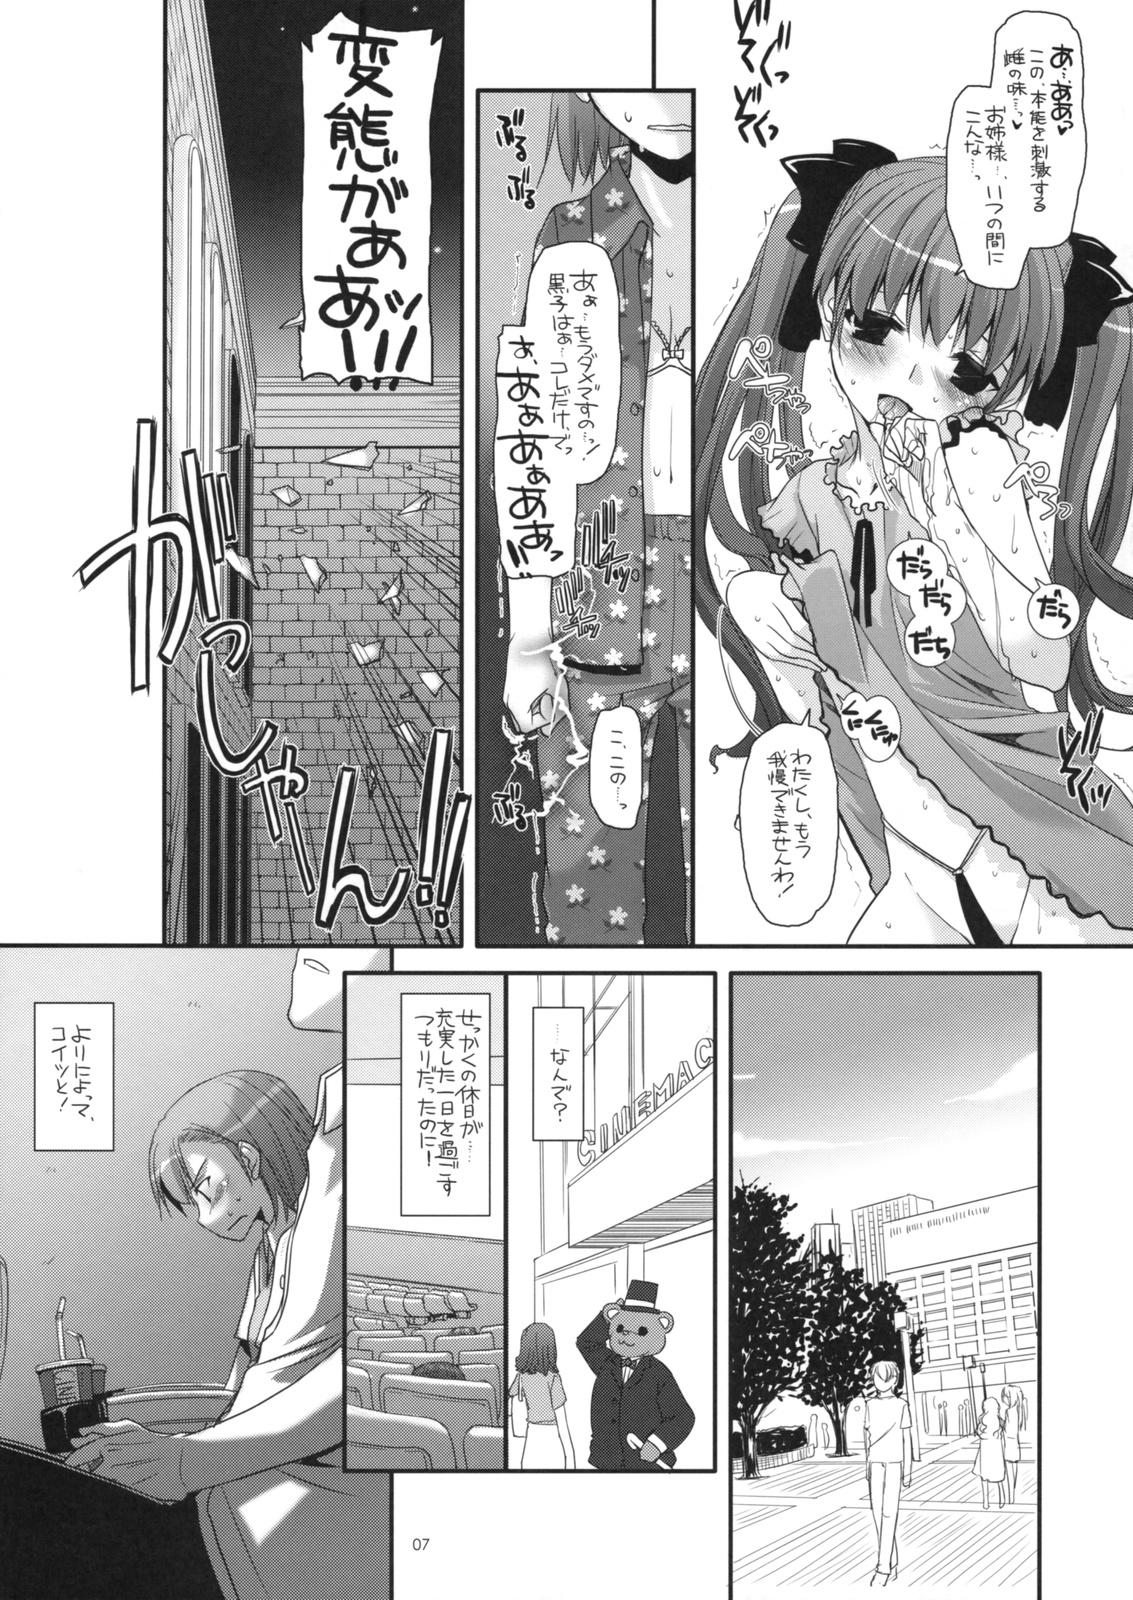 Close D.L. action 50 - Toaru kagaku no railgun Toaru majutsu no index Naija - Page 6